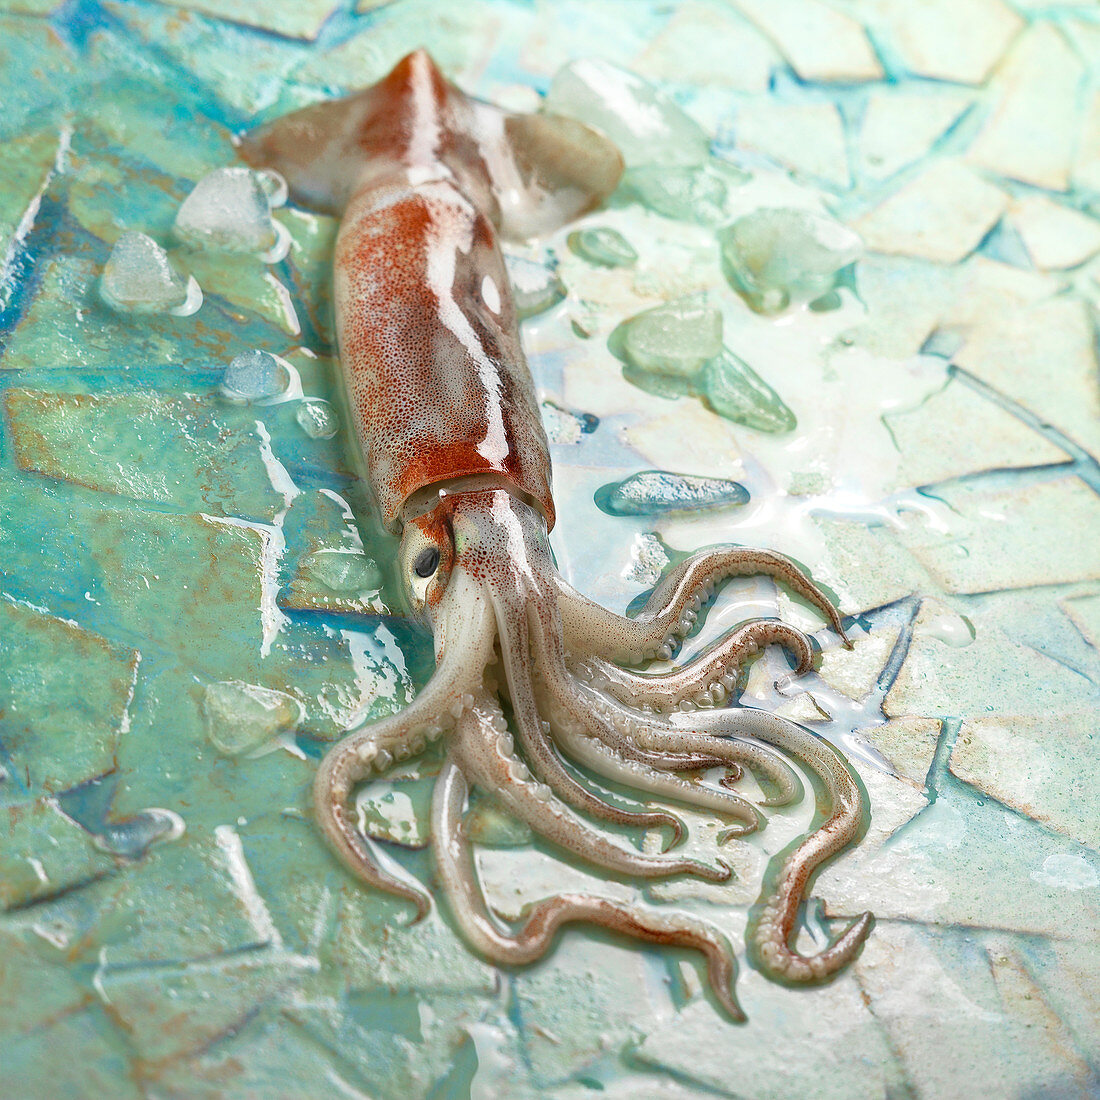 A fresh squid